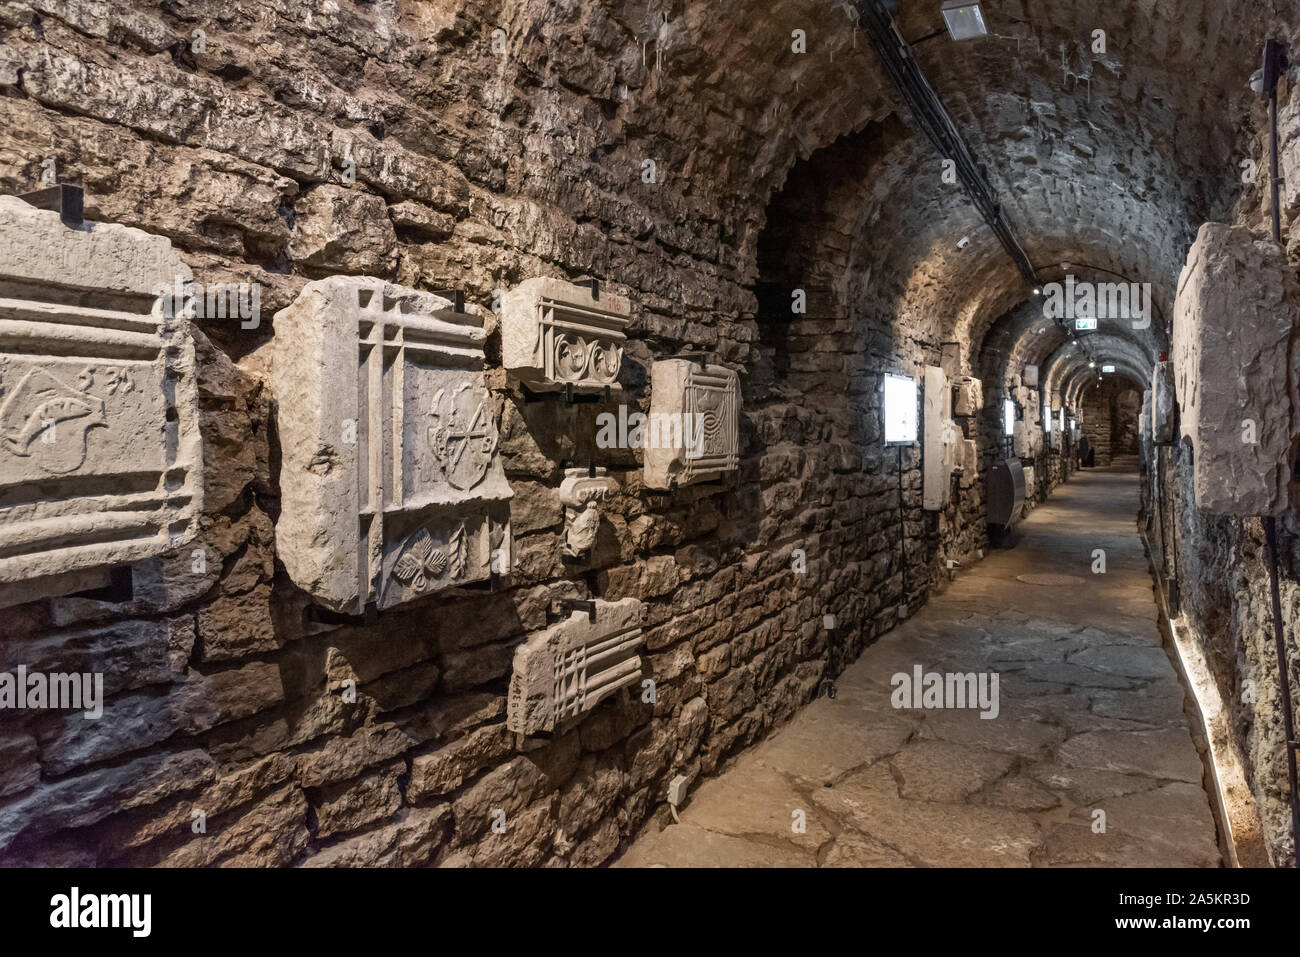 Musée pierre sculptée, passages et tunnels Bastion, Tallinn, Estonie Banque D'Images